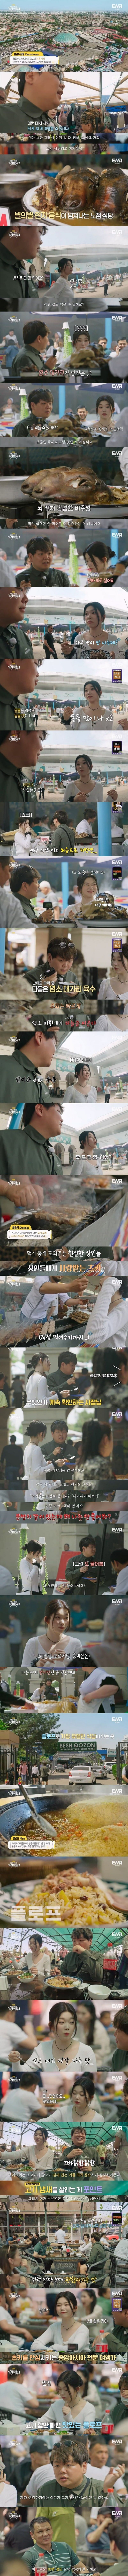 한국과 달리 고기 냄새를 살리는게 포인트인 우즈베키스탄 음식.jpg